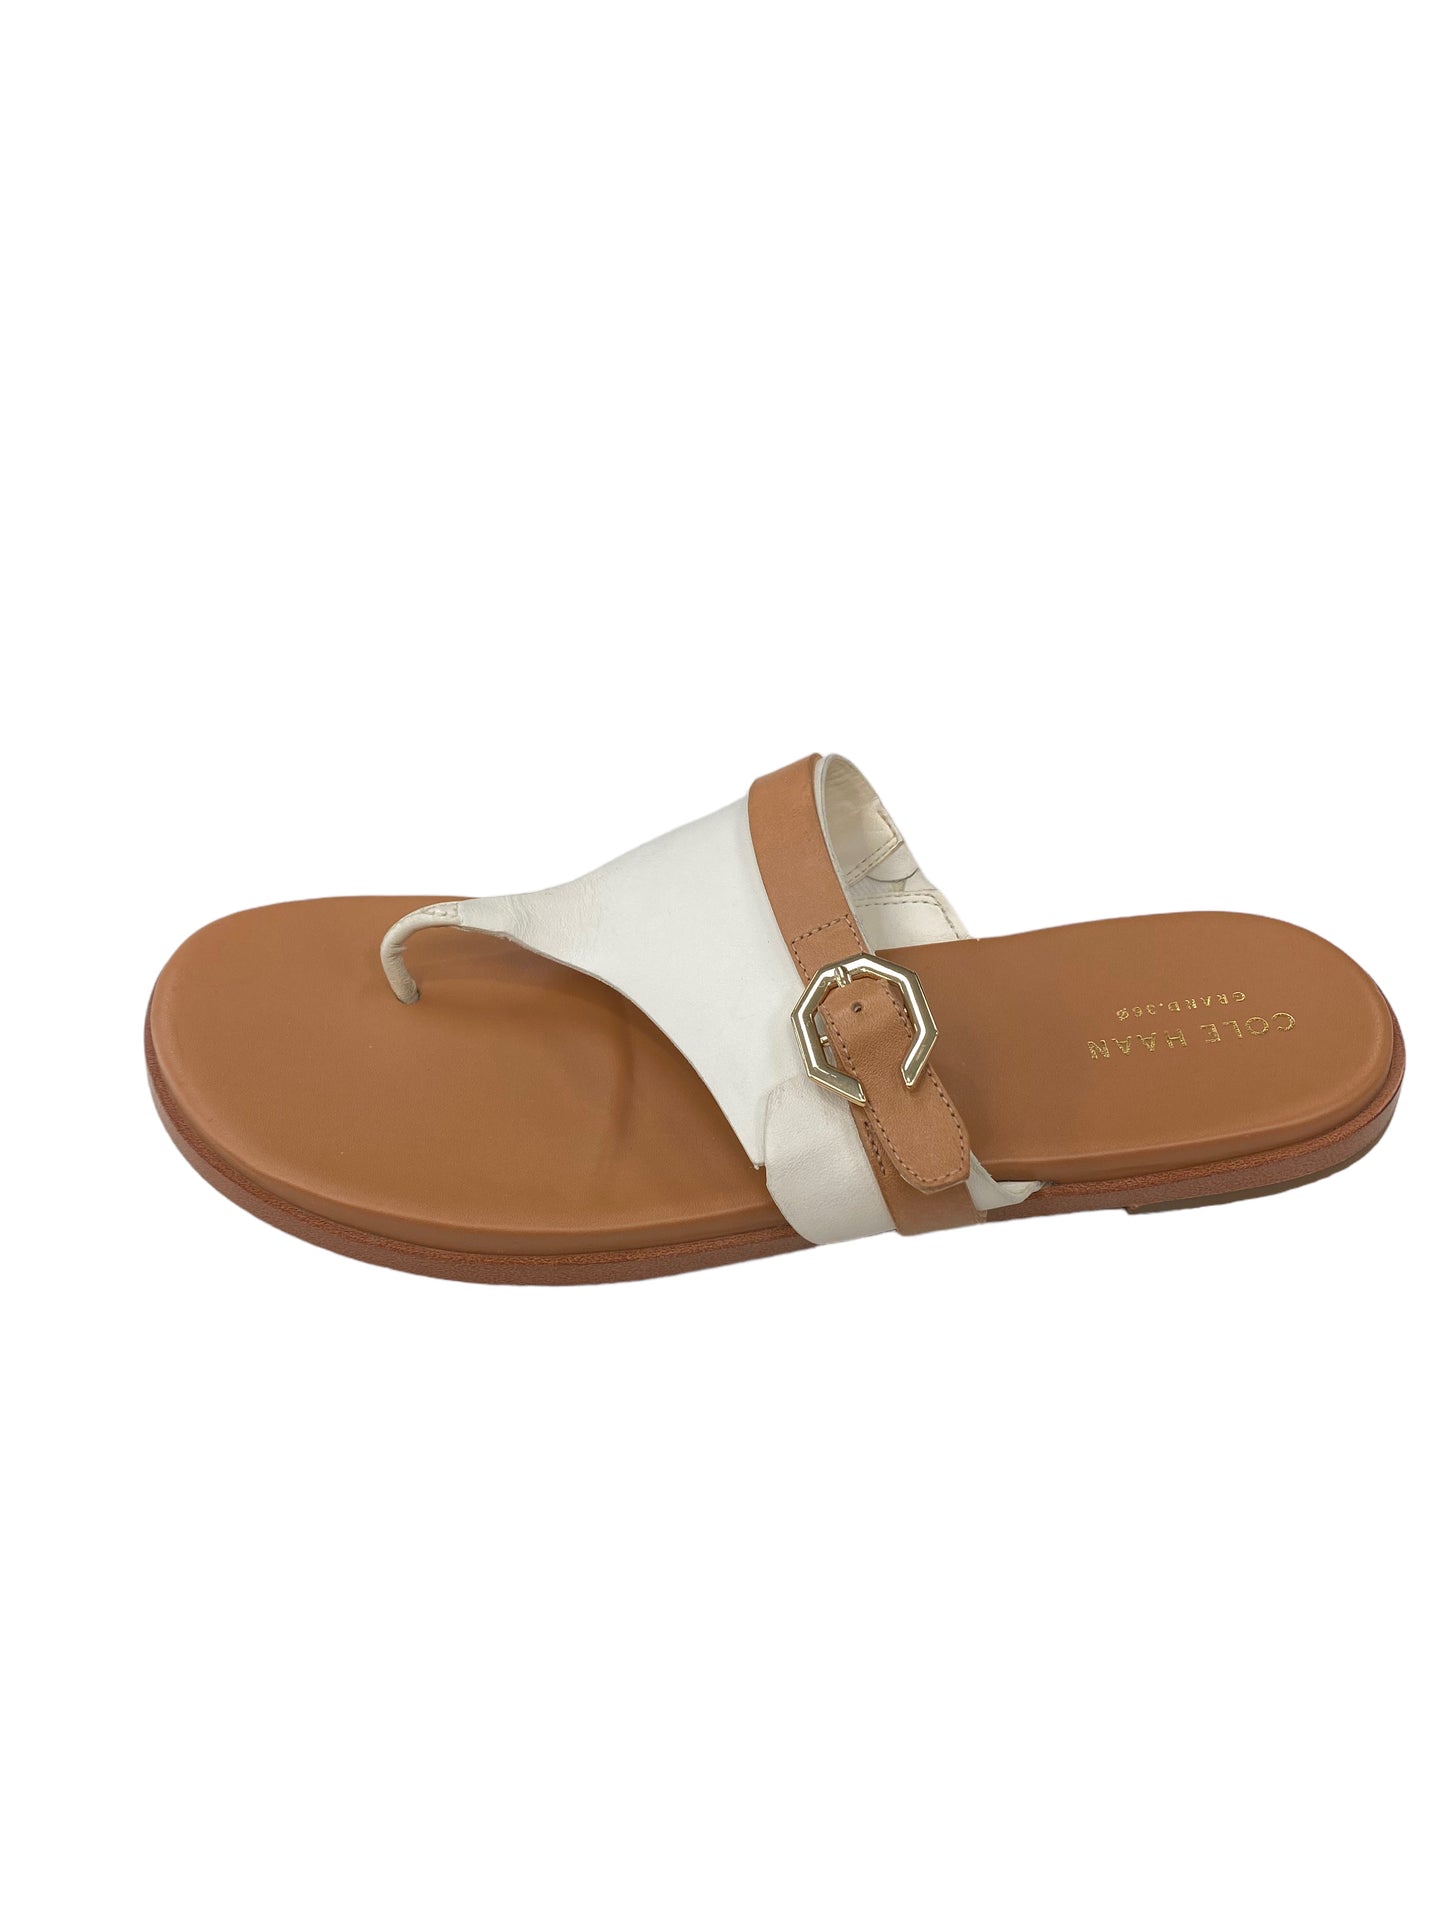 Beige Sandals Flip Flops Cole-haan, Size 9